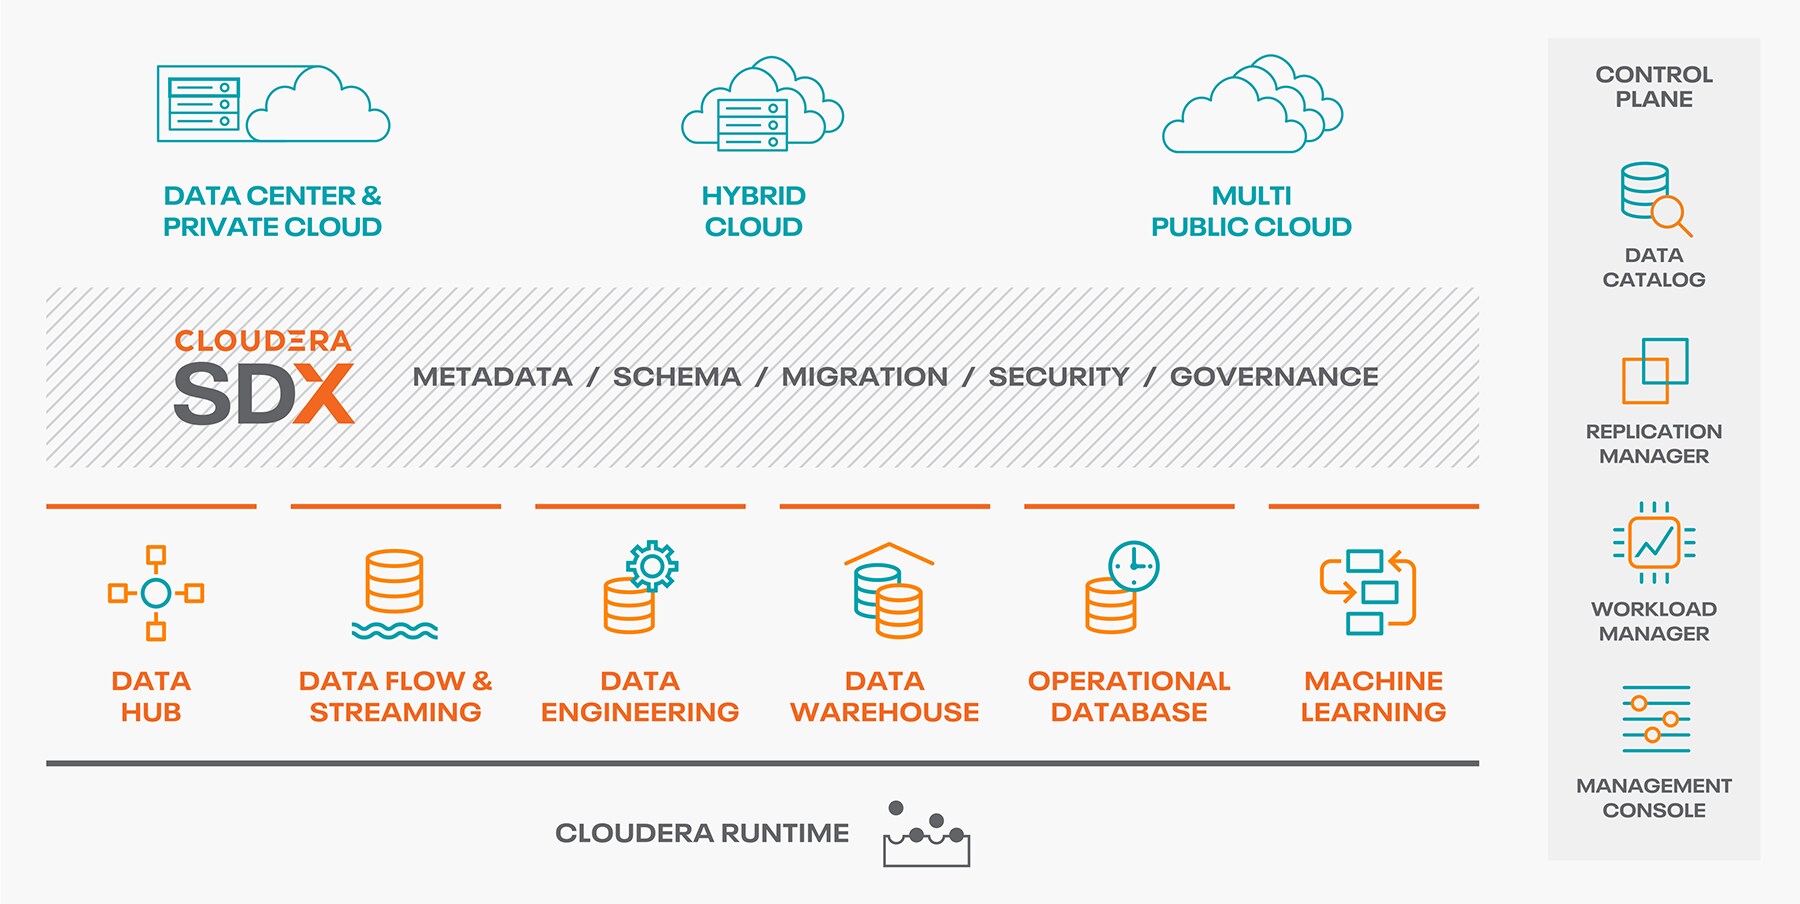 Enterprise Data Cloud architecture diagram